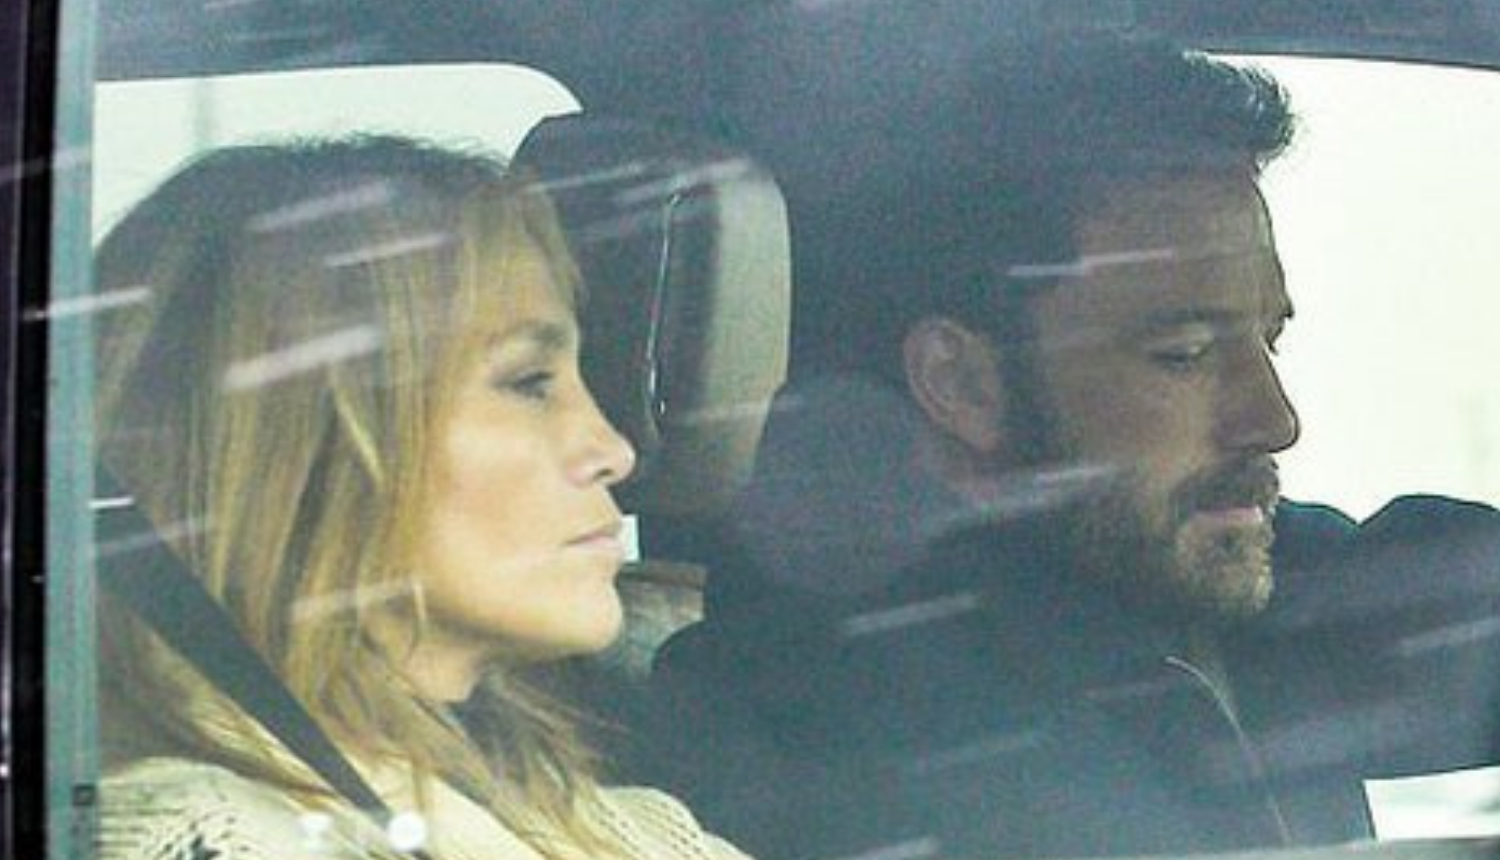 Alex Rodriguez 'veoma šokiran' što su Jennifer Lopez i Ben Affleck ponovno zajedno